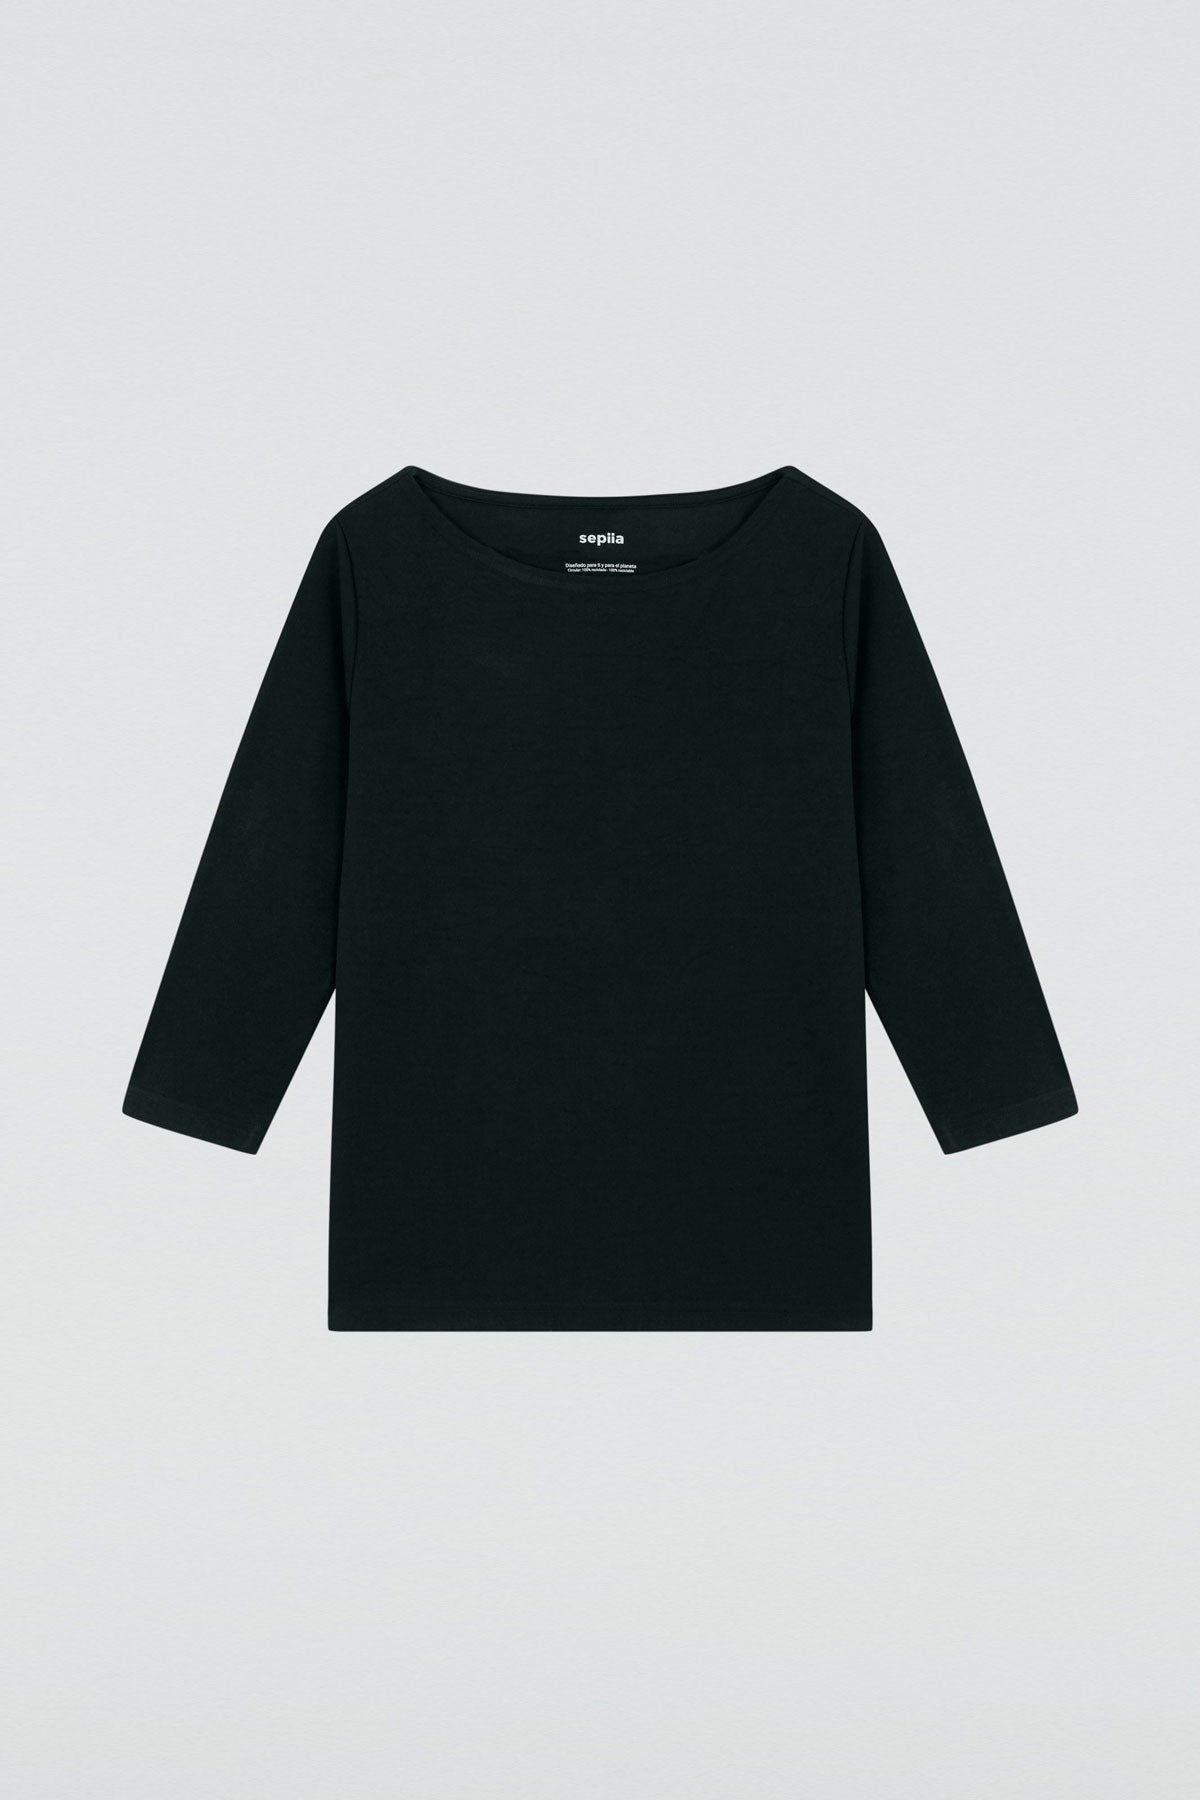 Camiseta para mujer con manga 3/4 y escote barco en color negro. Prenda básica perfecta para cualquier ocasión. Foto plano